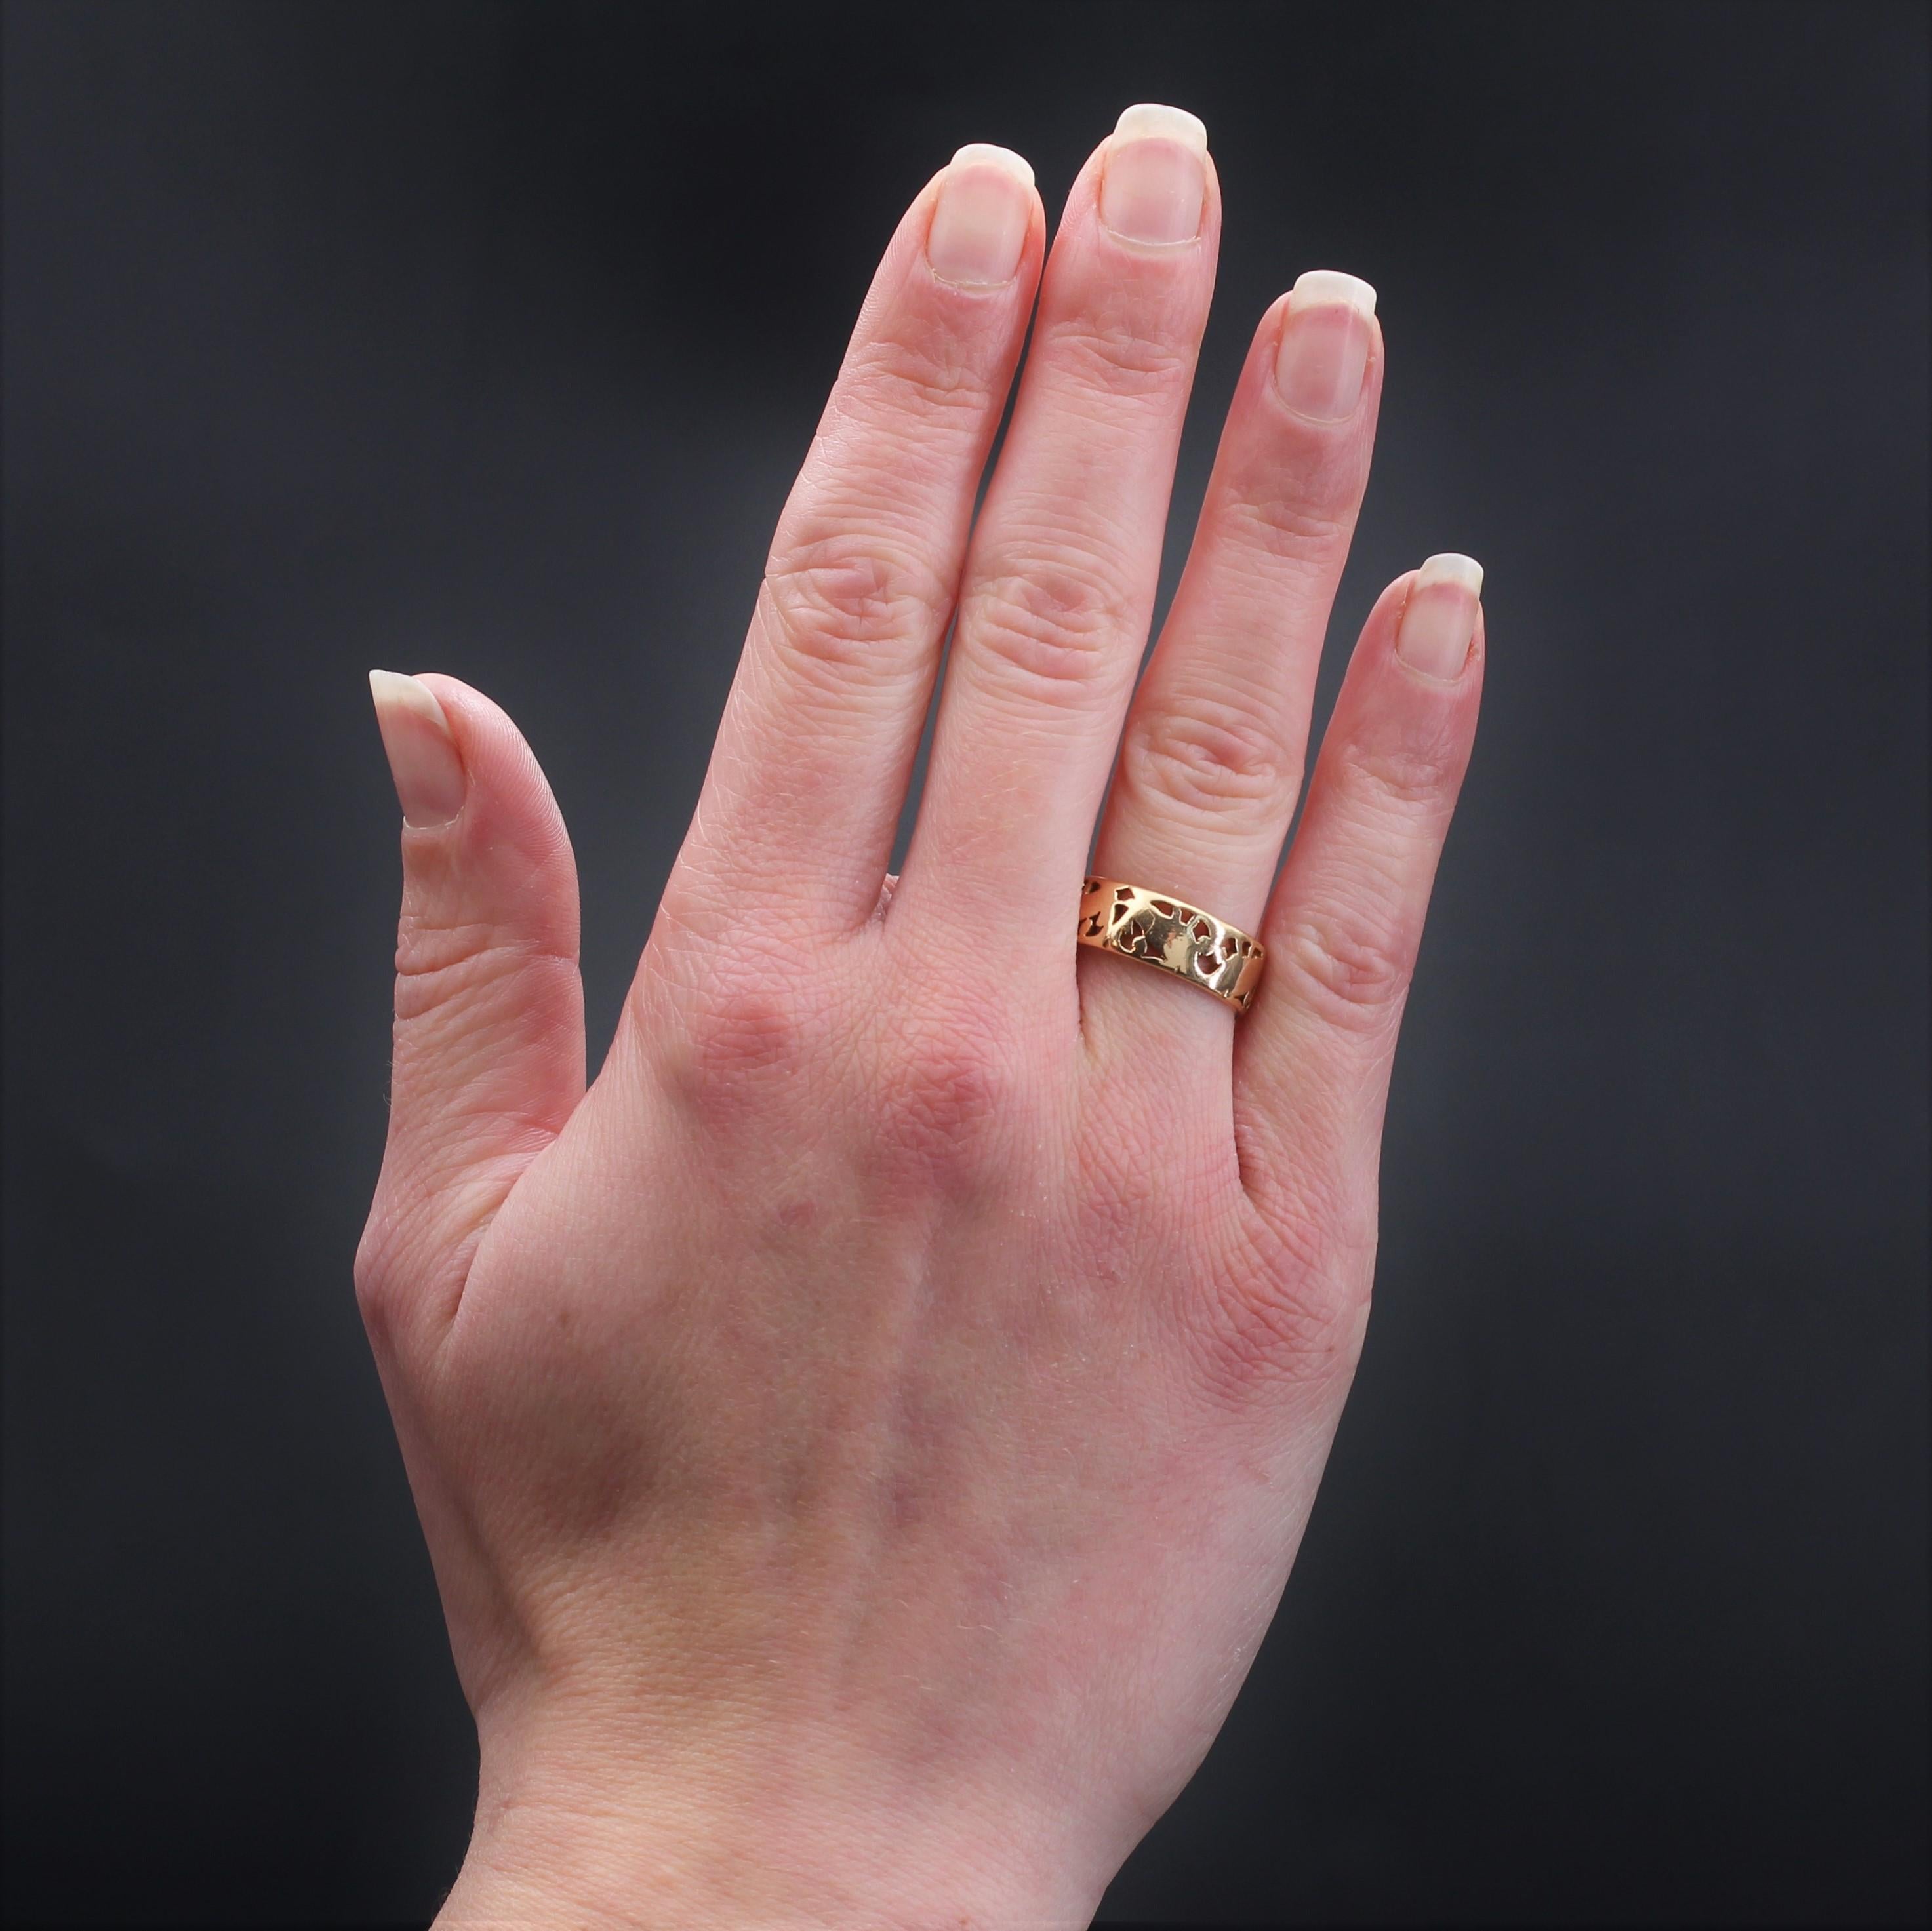  Ring aus 18 Karat Roségold.
Antiker Goldring, verziert mit einem durchbrochenen Muster.
Breite: 6,8 mm, Dicke: ca. 0,8 mm.
Gesamtgewicht des Schmuckstücks: ca. 5,4 g.
US Größe : 7,5 ; Keine Größenänderung.
Authentisches antikes Juwel - Werk des XX.